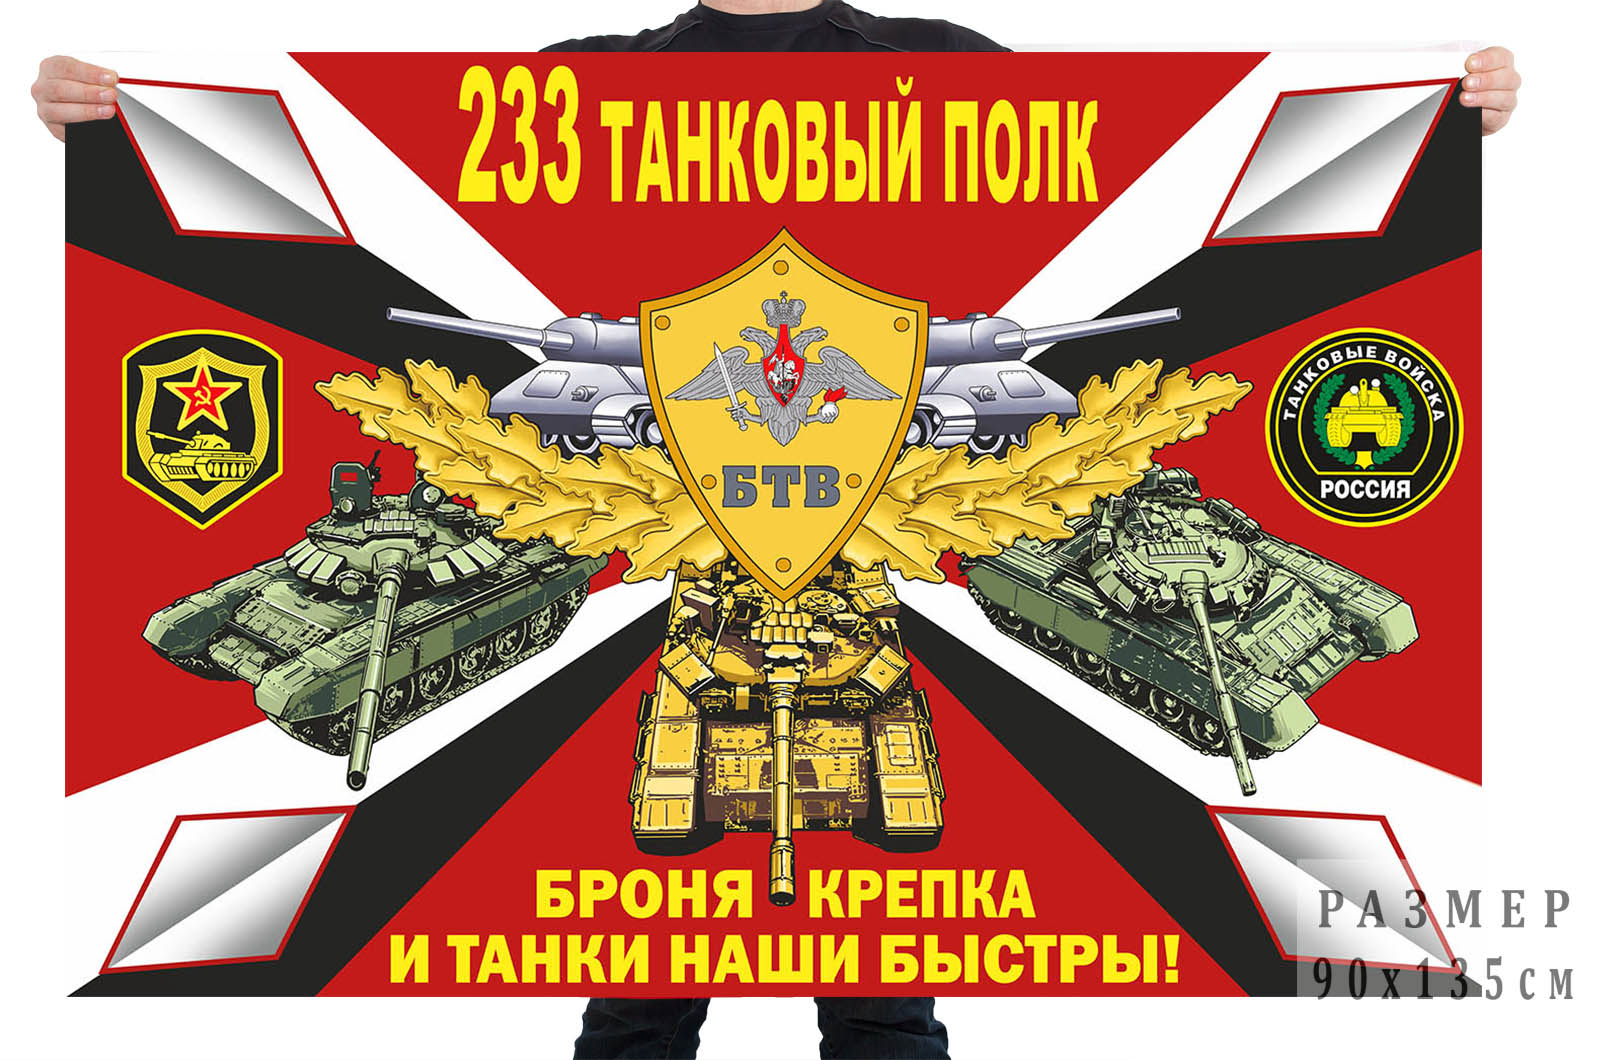 Флаг 233 танкового полка